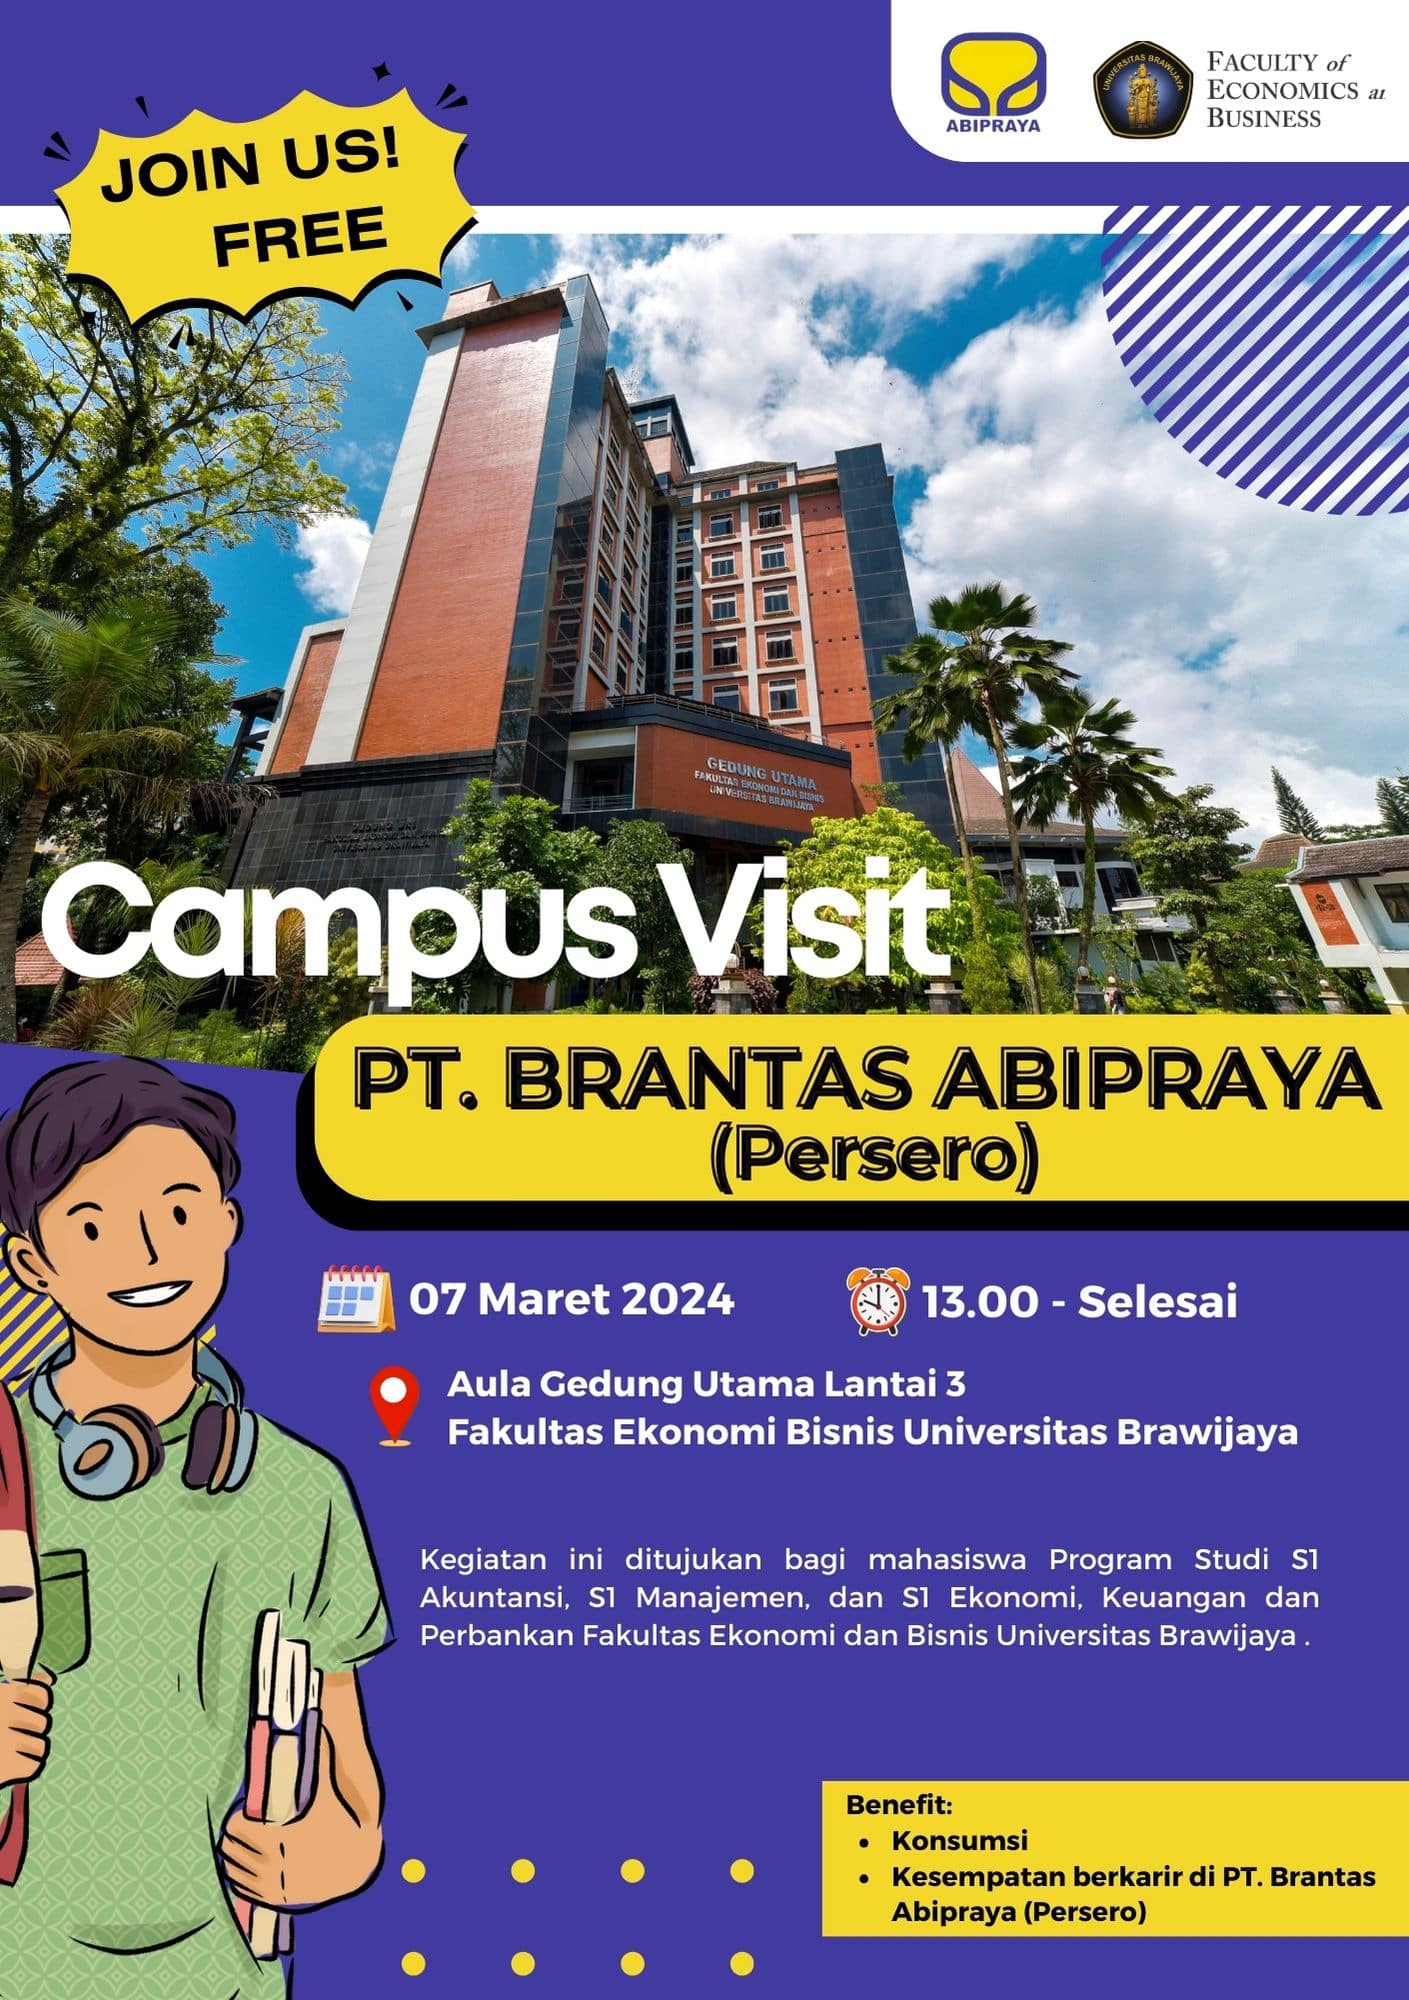 Campus Visit PT. Brantas Abipraya (Persero)